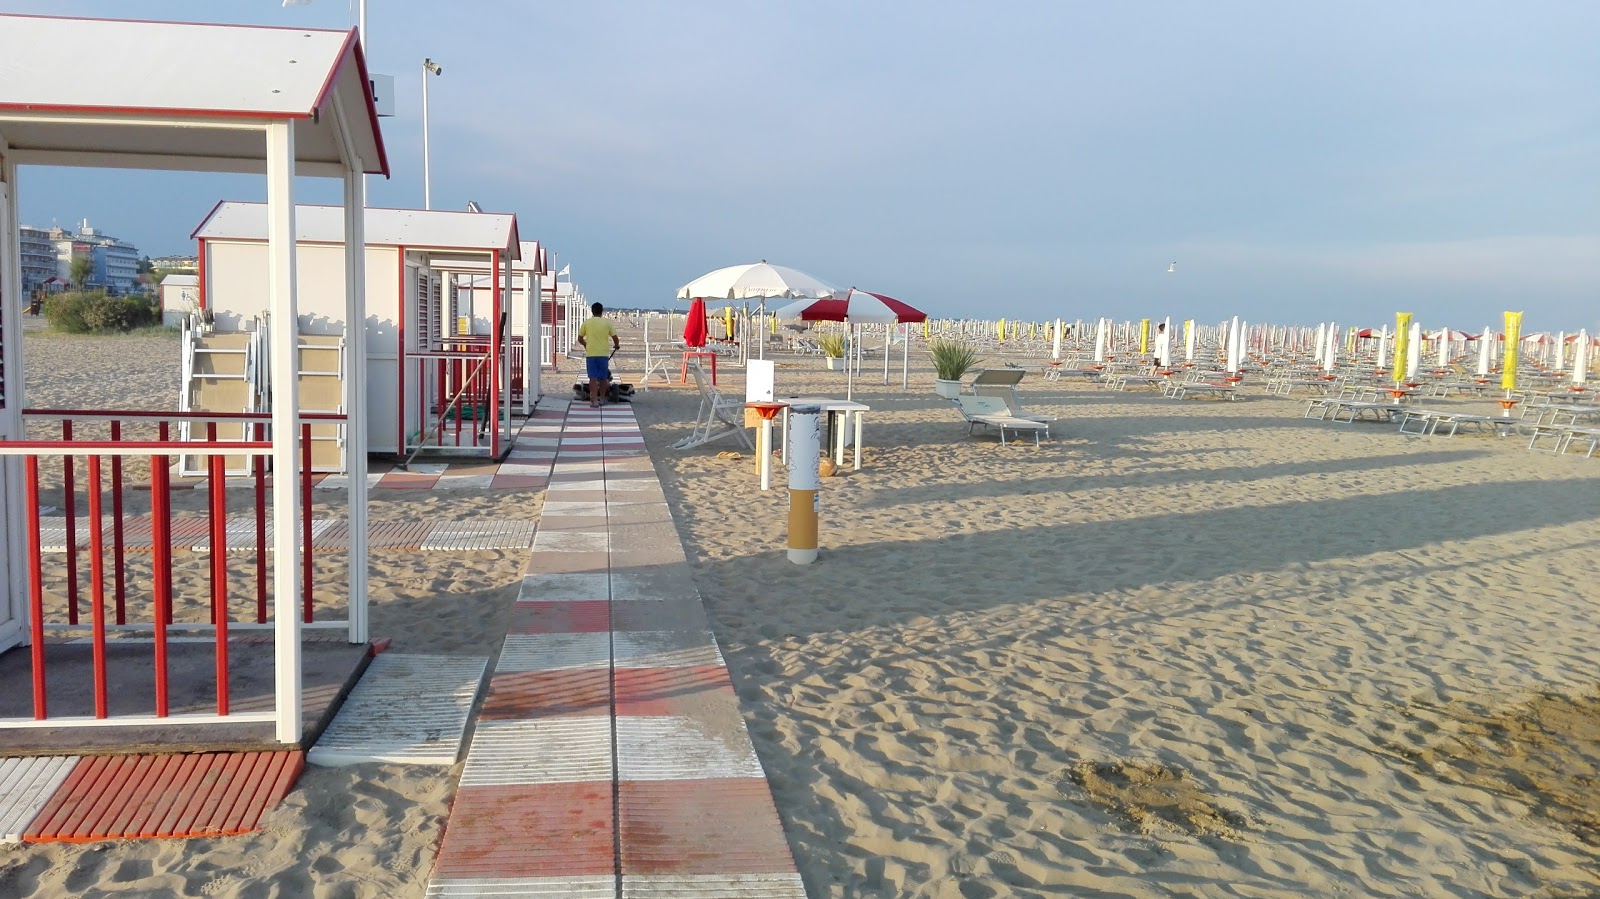 Photo de Spiaggia di Levante - endroit populaire parmi les connaisseurs de la détente